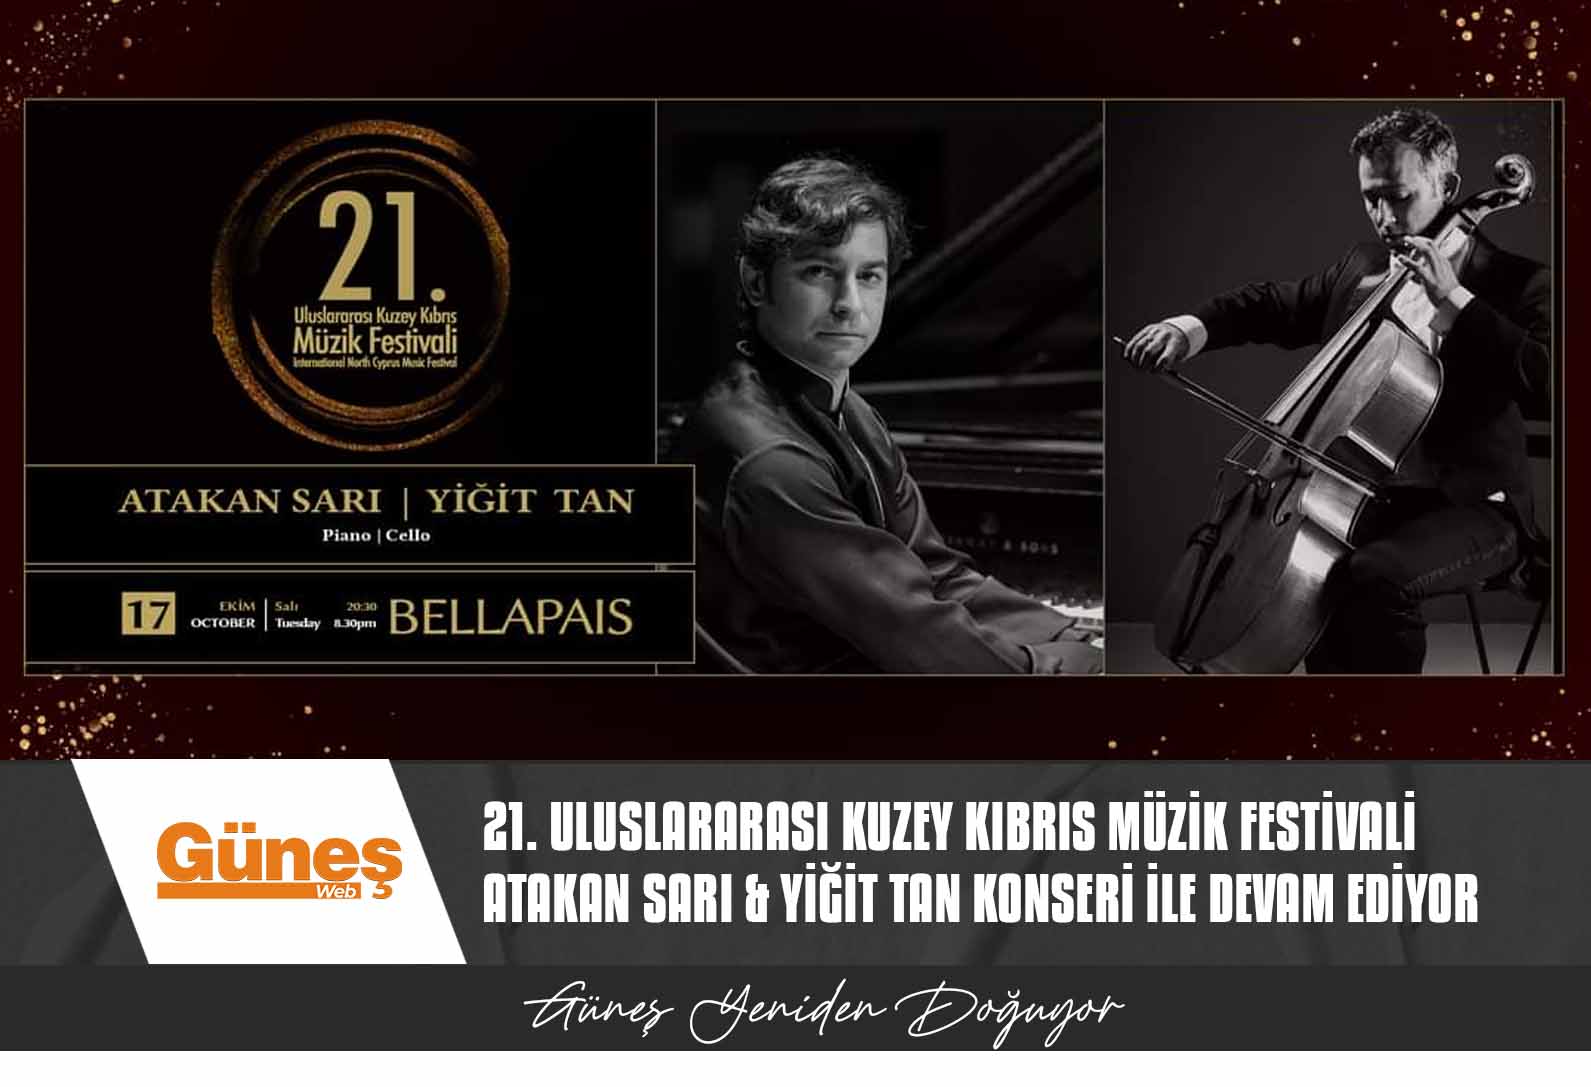 21. Uluslararası Kuzey Kıbrıs Müzik Festivali Atakan Sarı & Yiğit Tan konseri ile devam ediyor